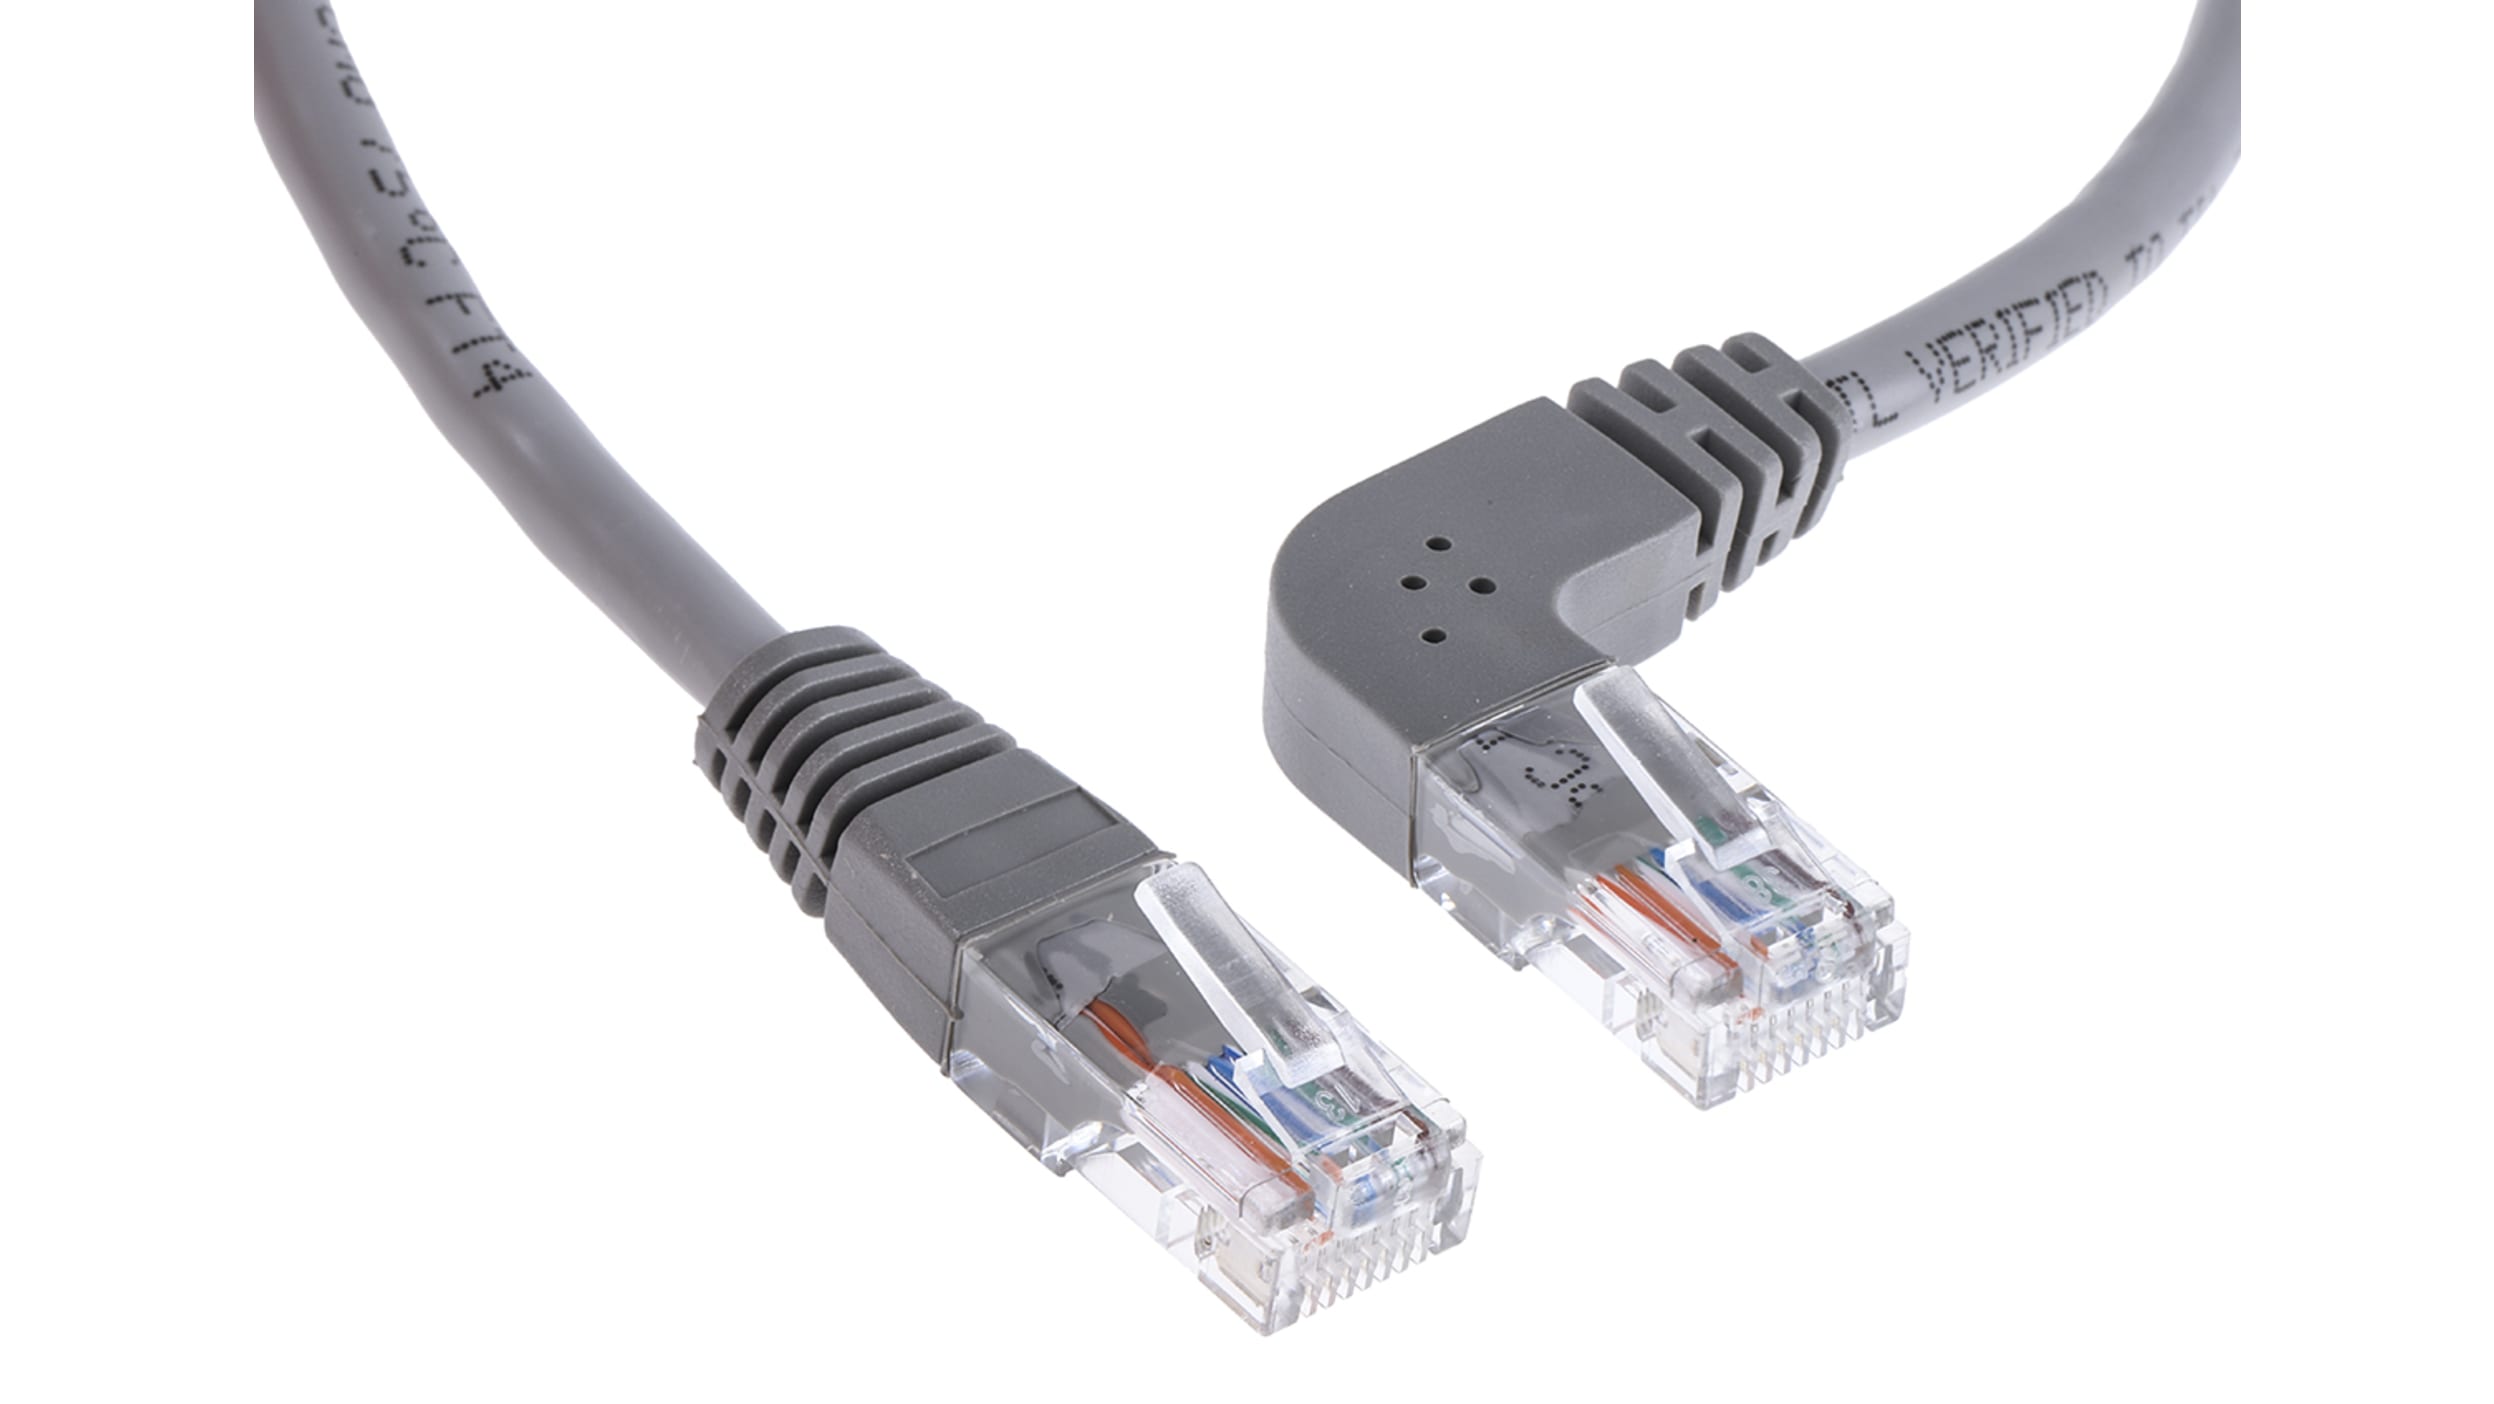 Câble Ethernet RJ45 droit, 2 paires, longueur 1 m